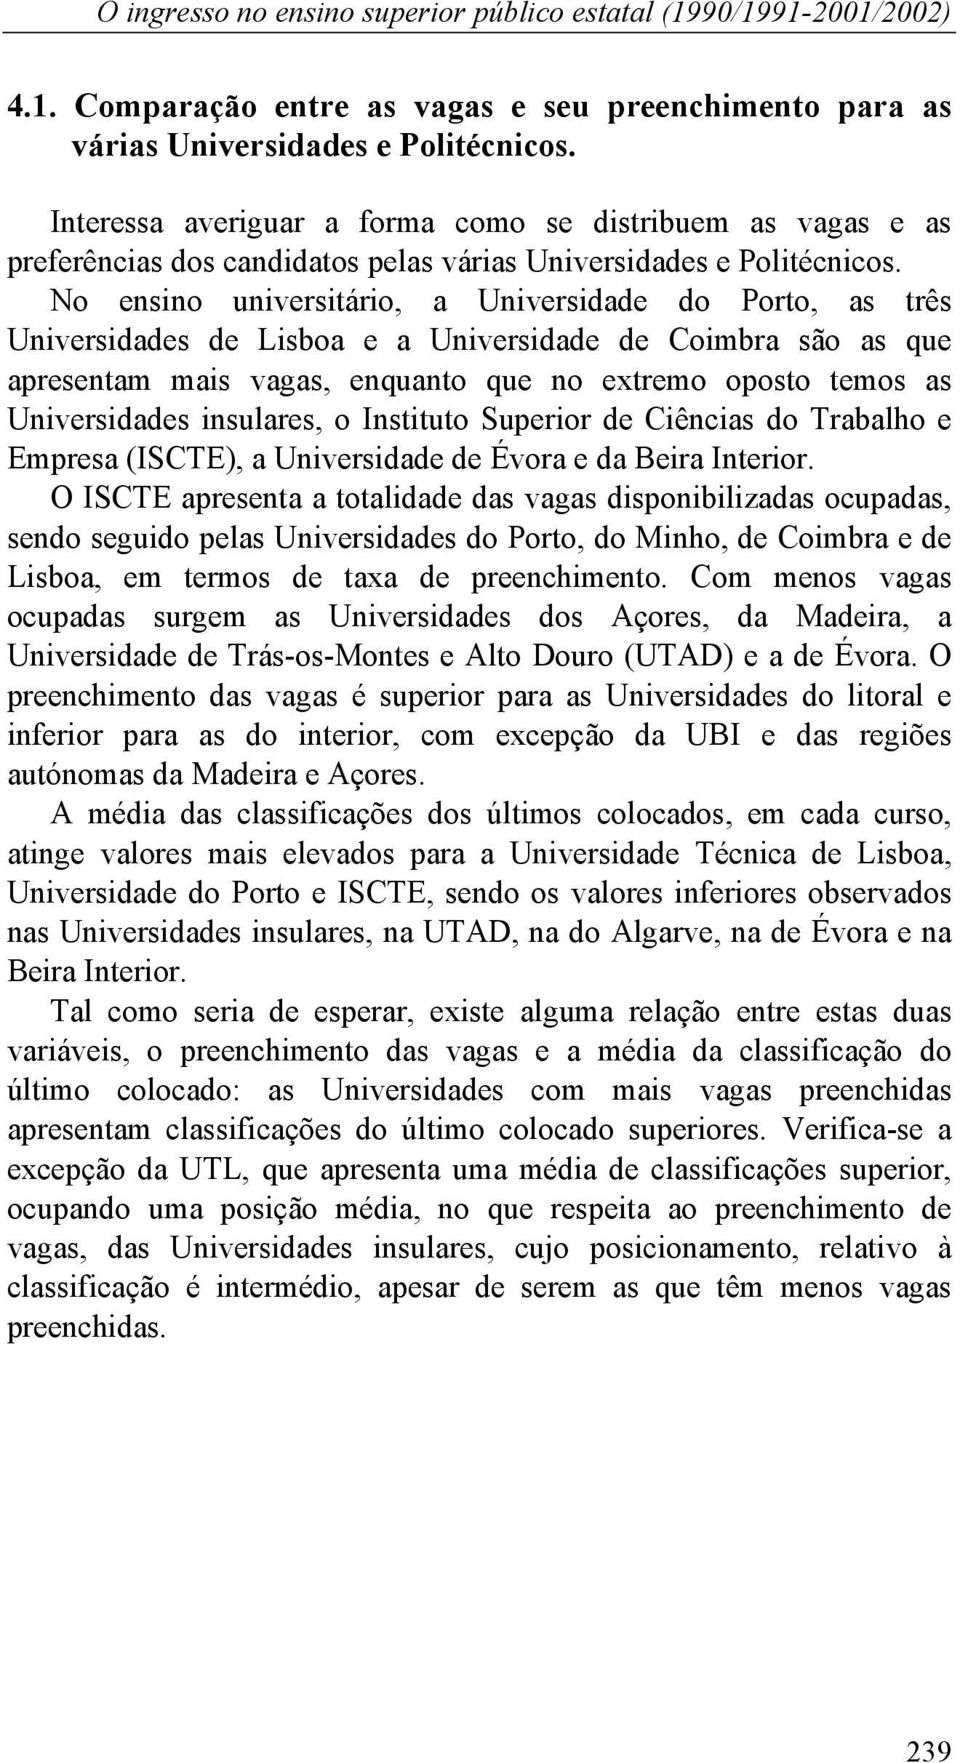 No ensino universitário, a Universidade do Porto, as três Universidades de Lisboa e a Universidade de Coimbra são as que apresentam mais vagas, enquanto que no extremo oposto temos as Universidades